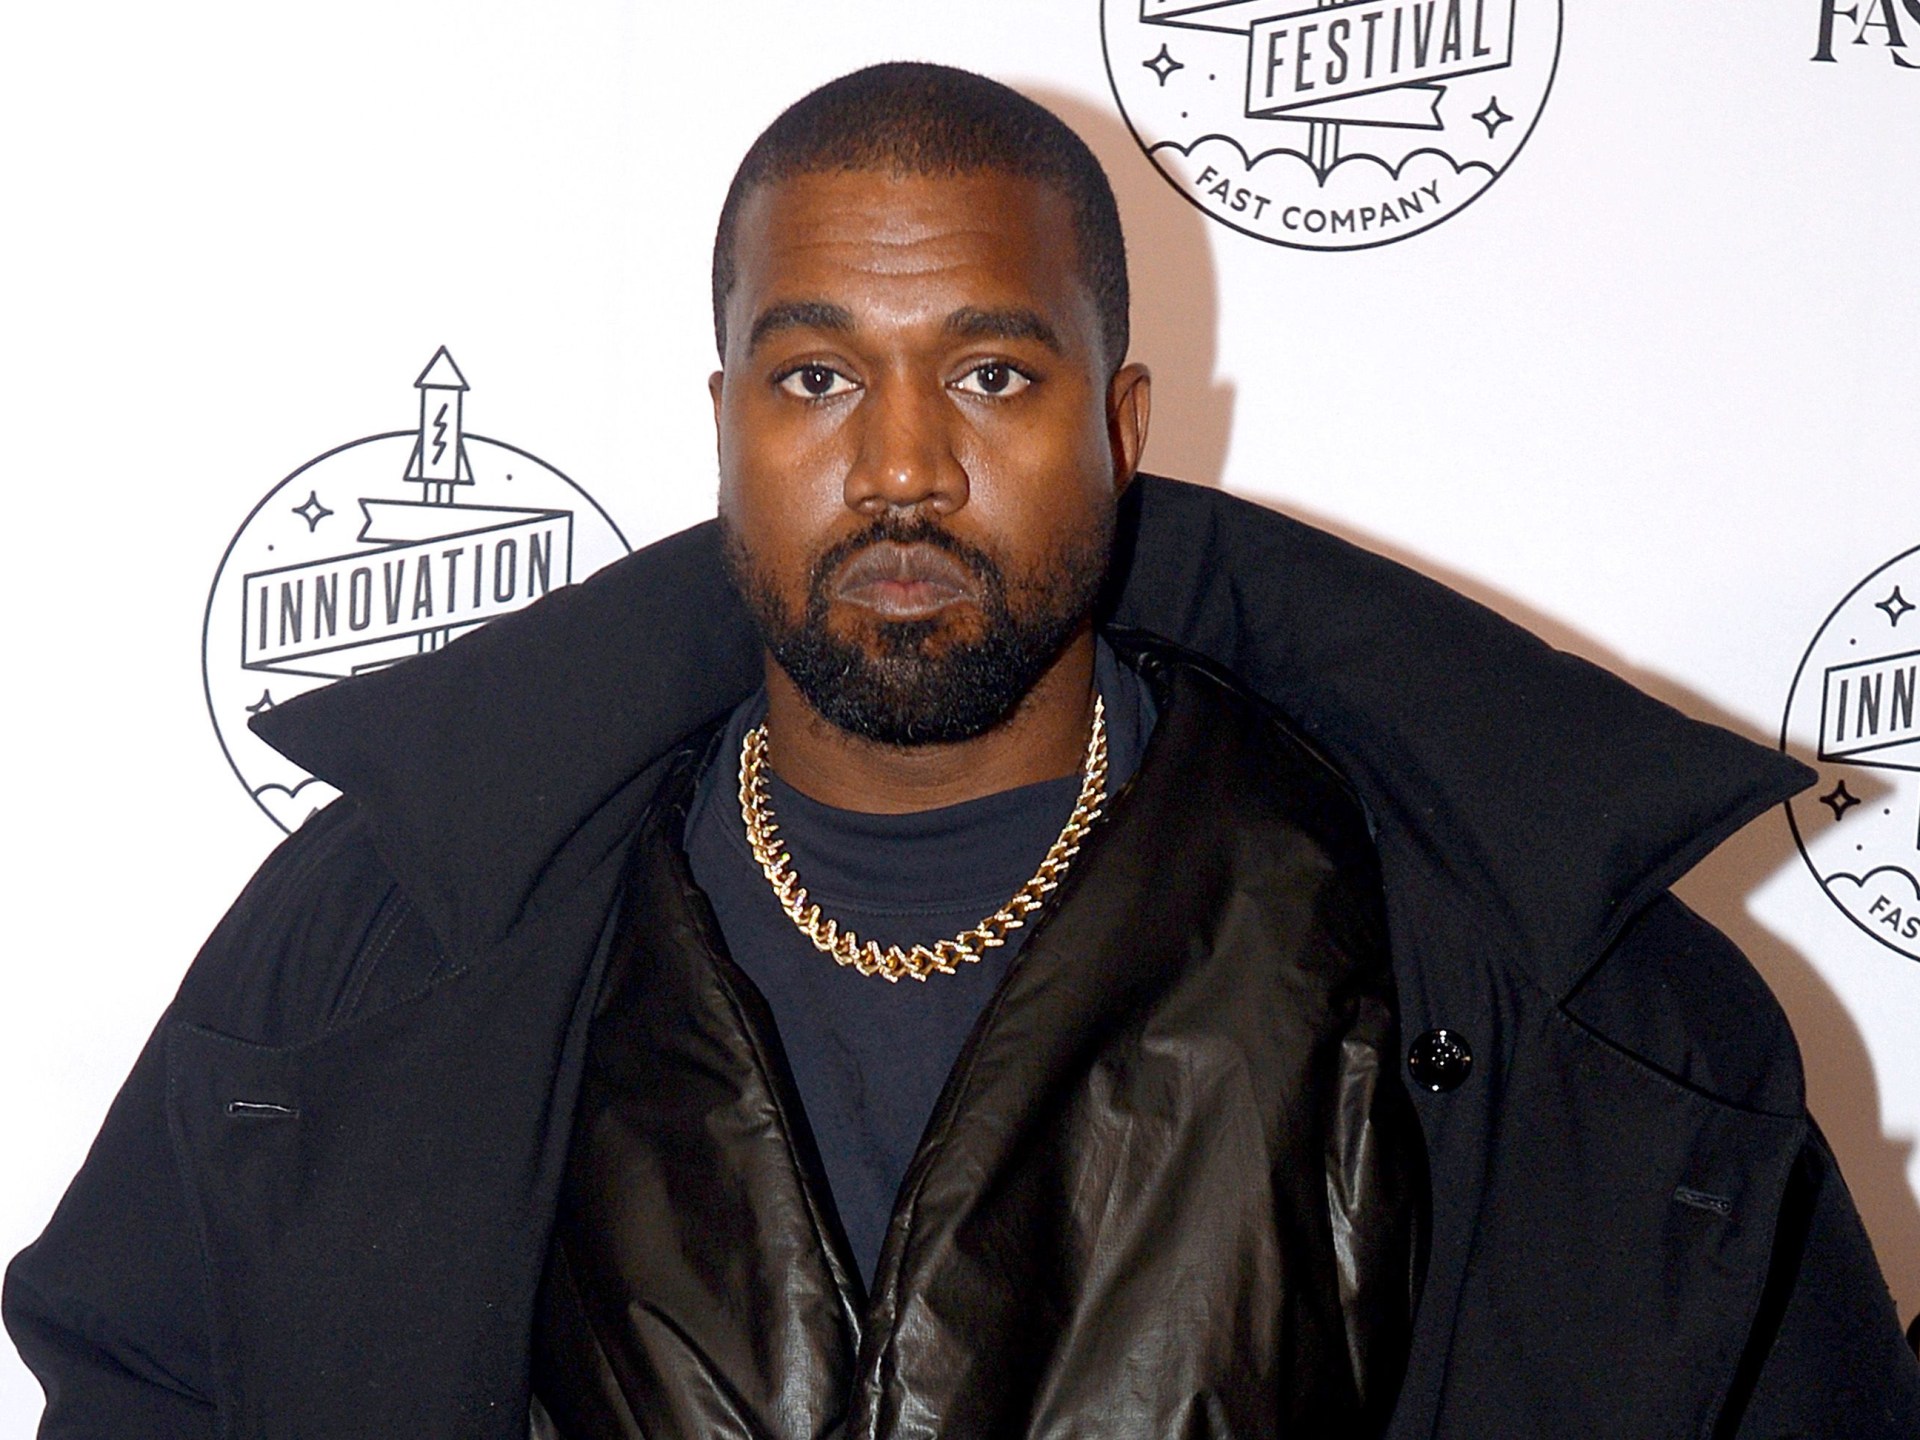 Kanye West o escoltando do escritório da Skechers, diz marca de sapatos |  notícias sobre racismo